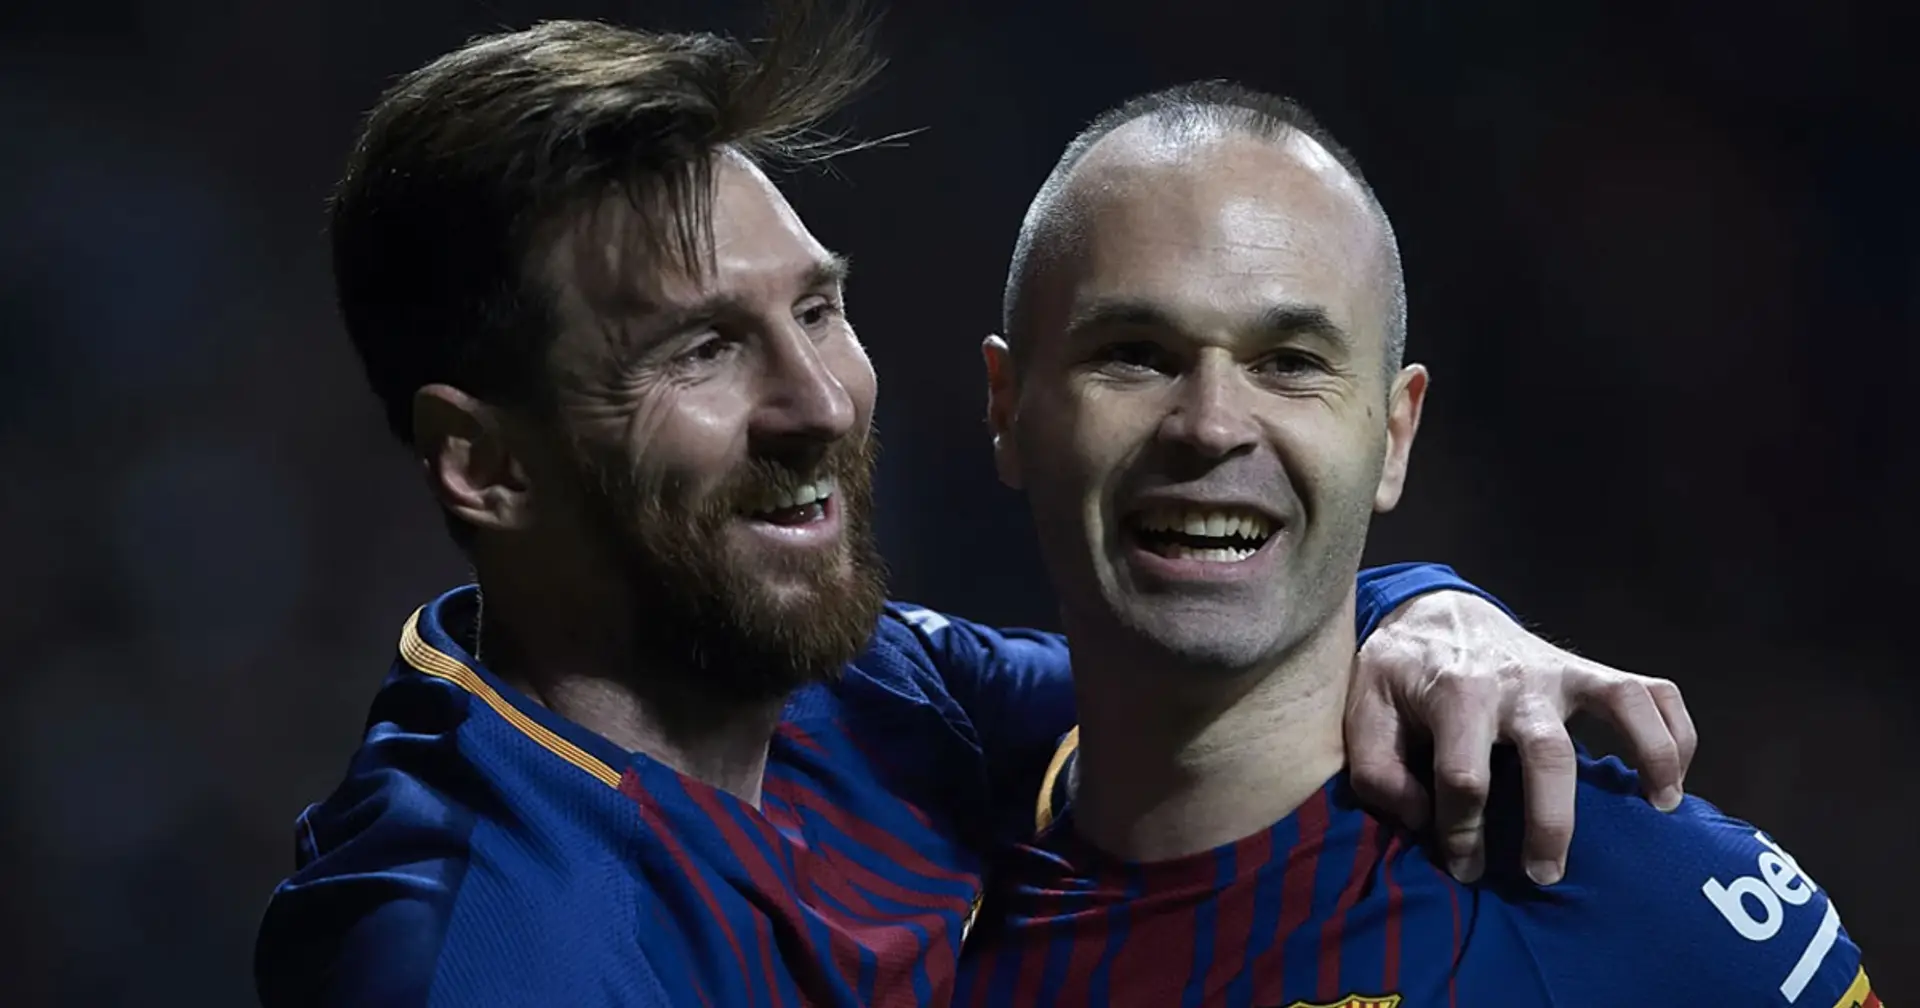 "Quand les choses empirent, j'aime qu'il soit proche": Messi explique son lien unique avec Iniesta